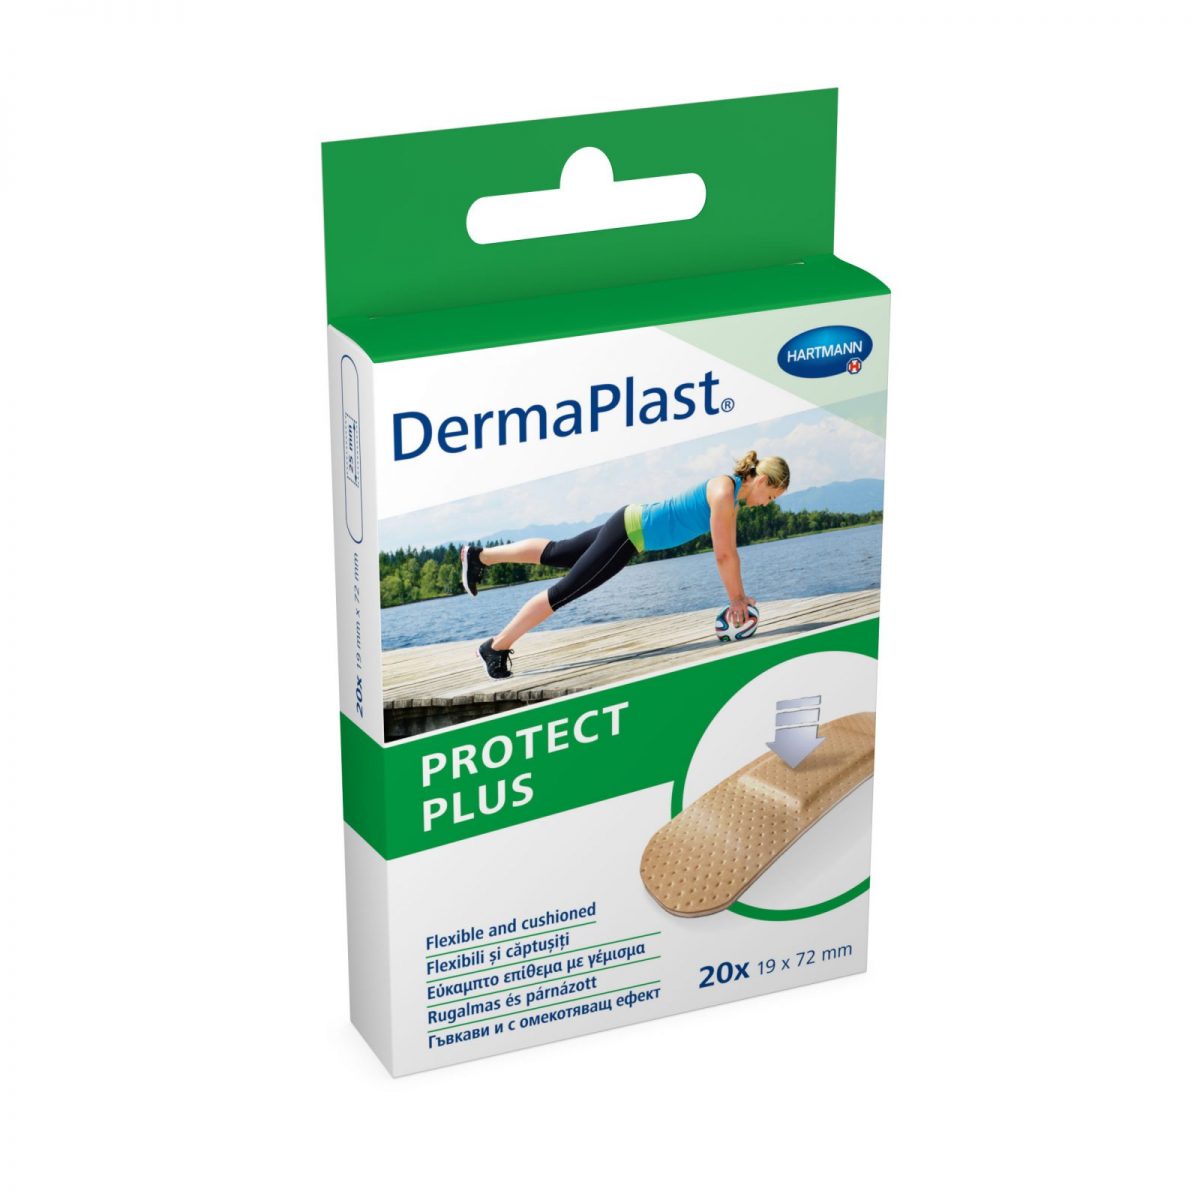 DermaPlast protect plus